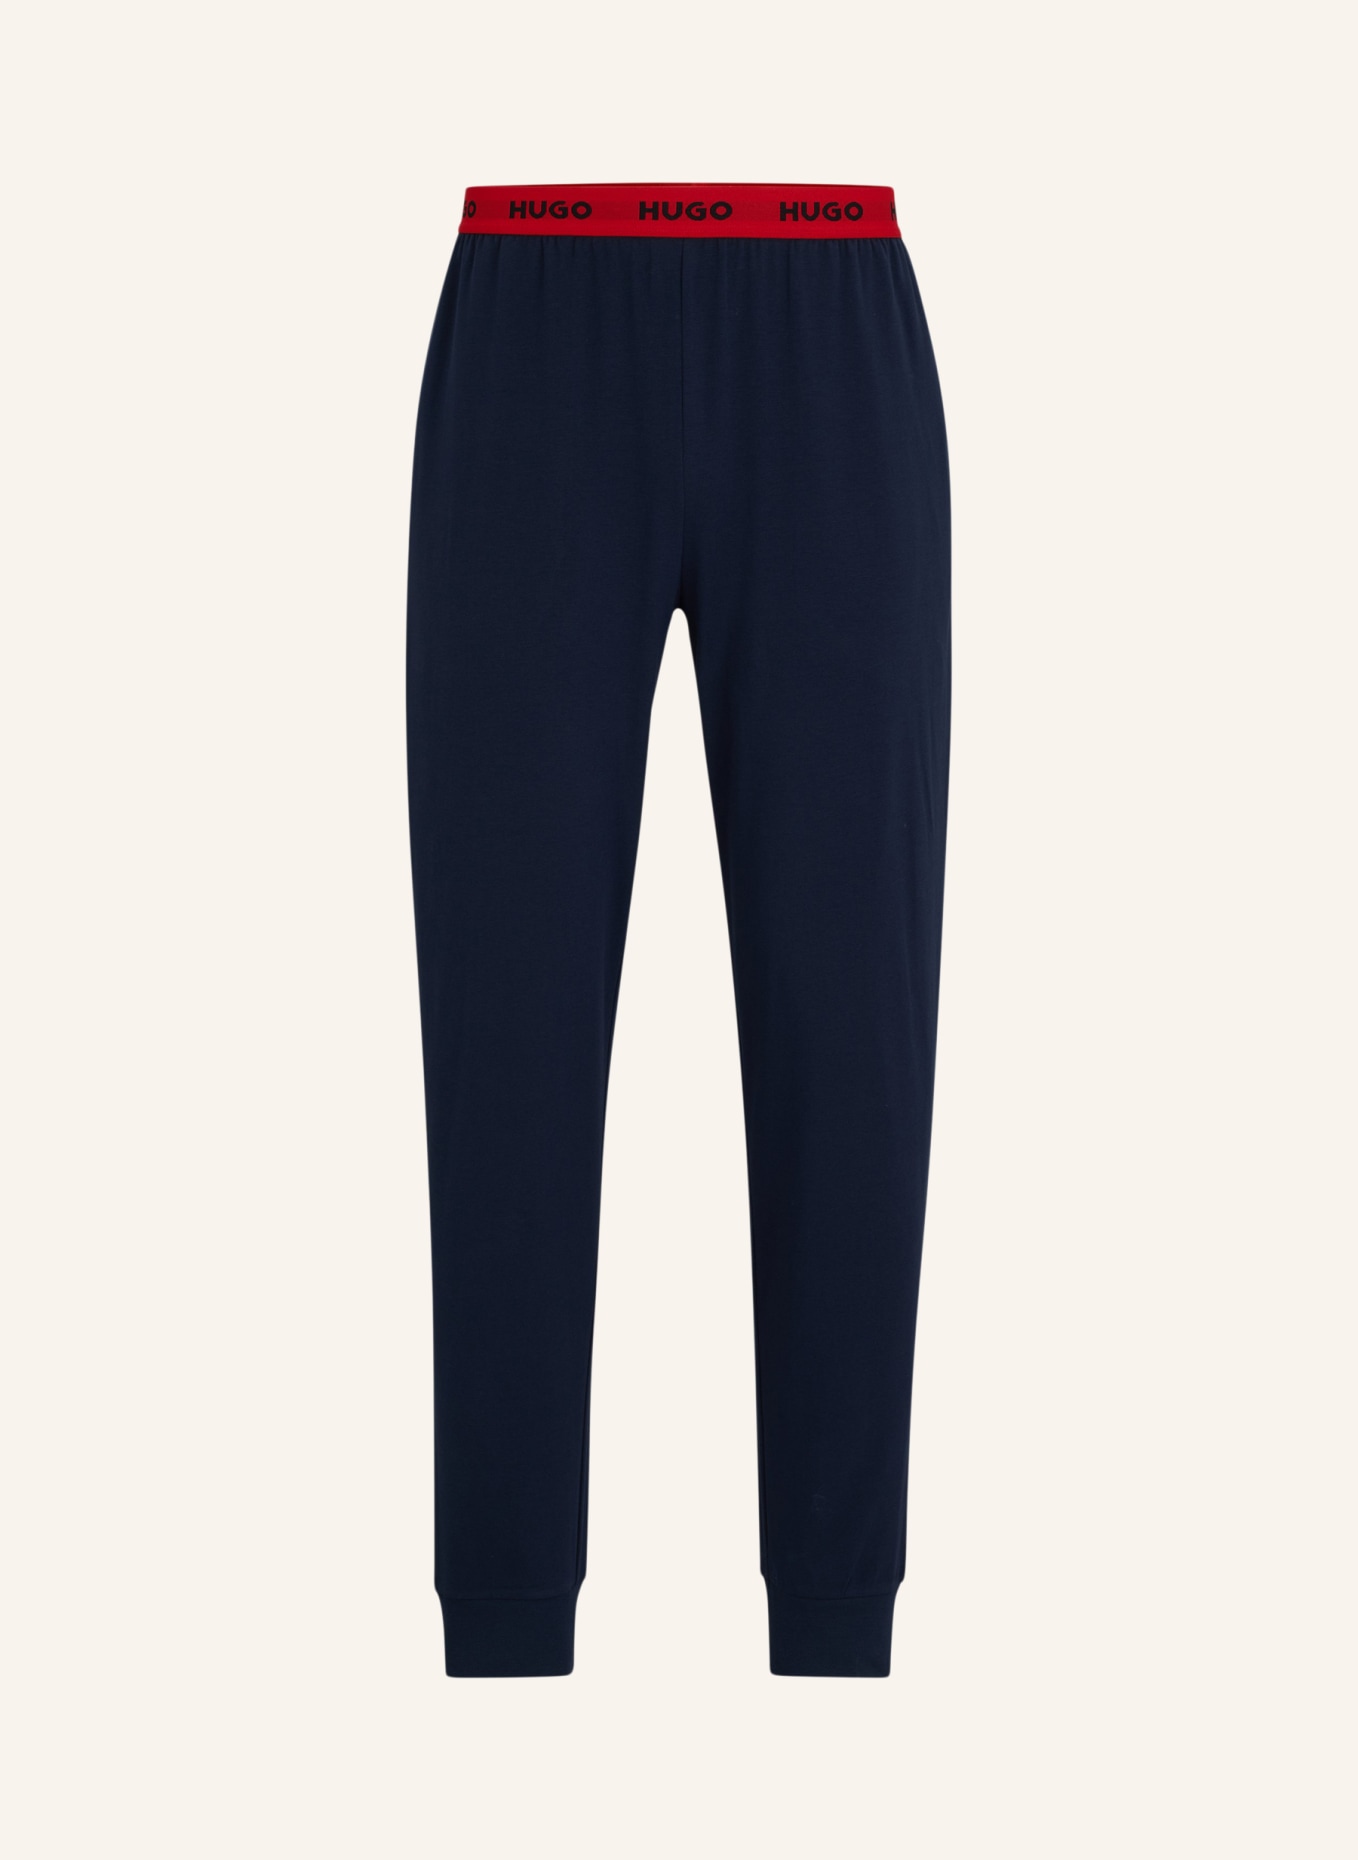 HUGO Pyjamas Unterteil LINKED PANTS, Farbe: DUNKELBLAU (Bild 1)